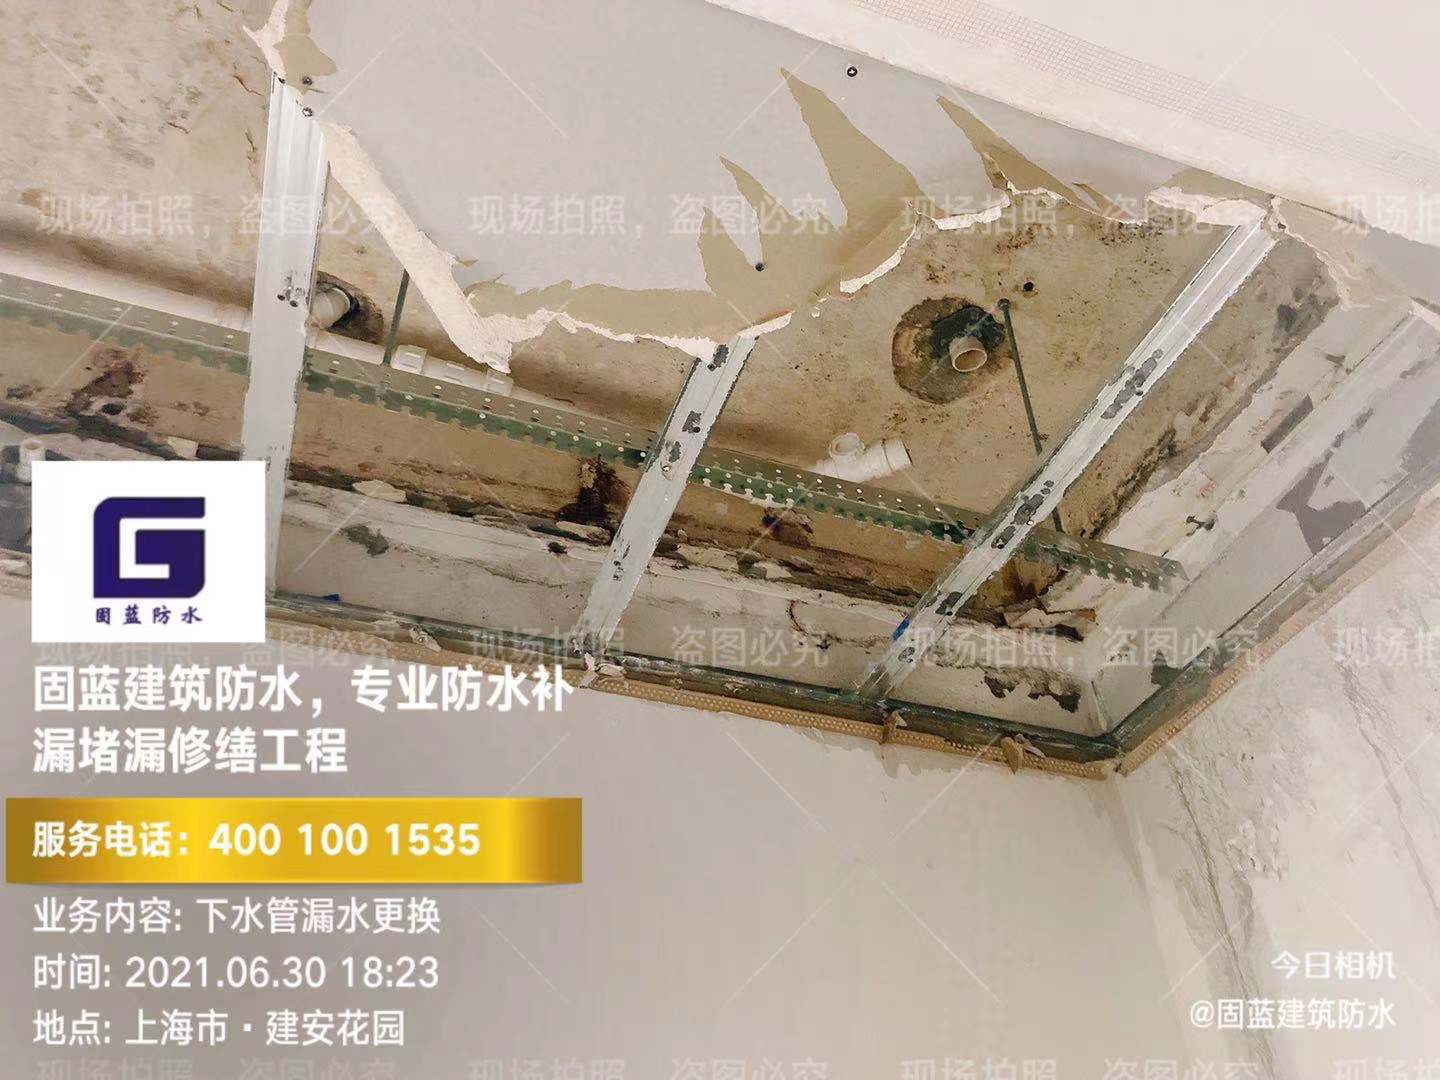 上海楼房外墙窗户渗漏水专业维修公司固蓝建筑防水 免费勘察现场